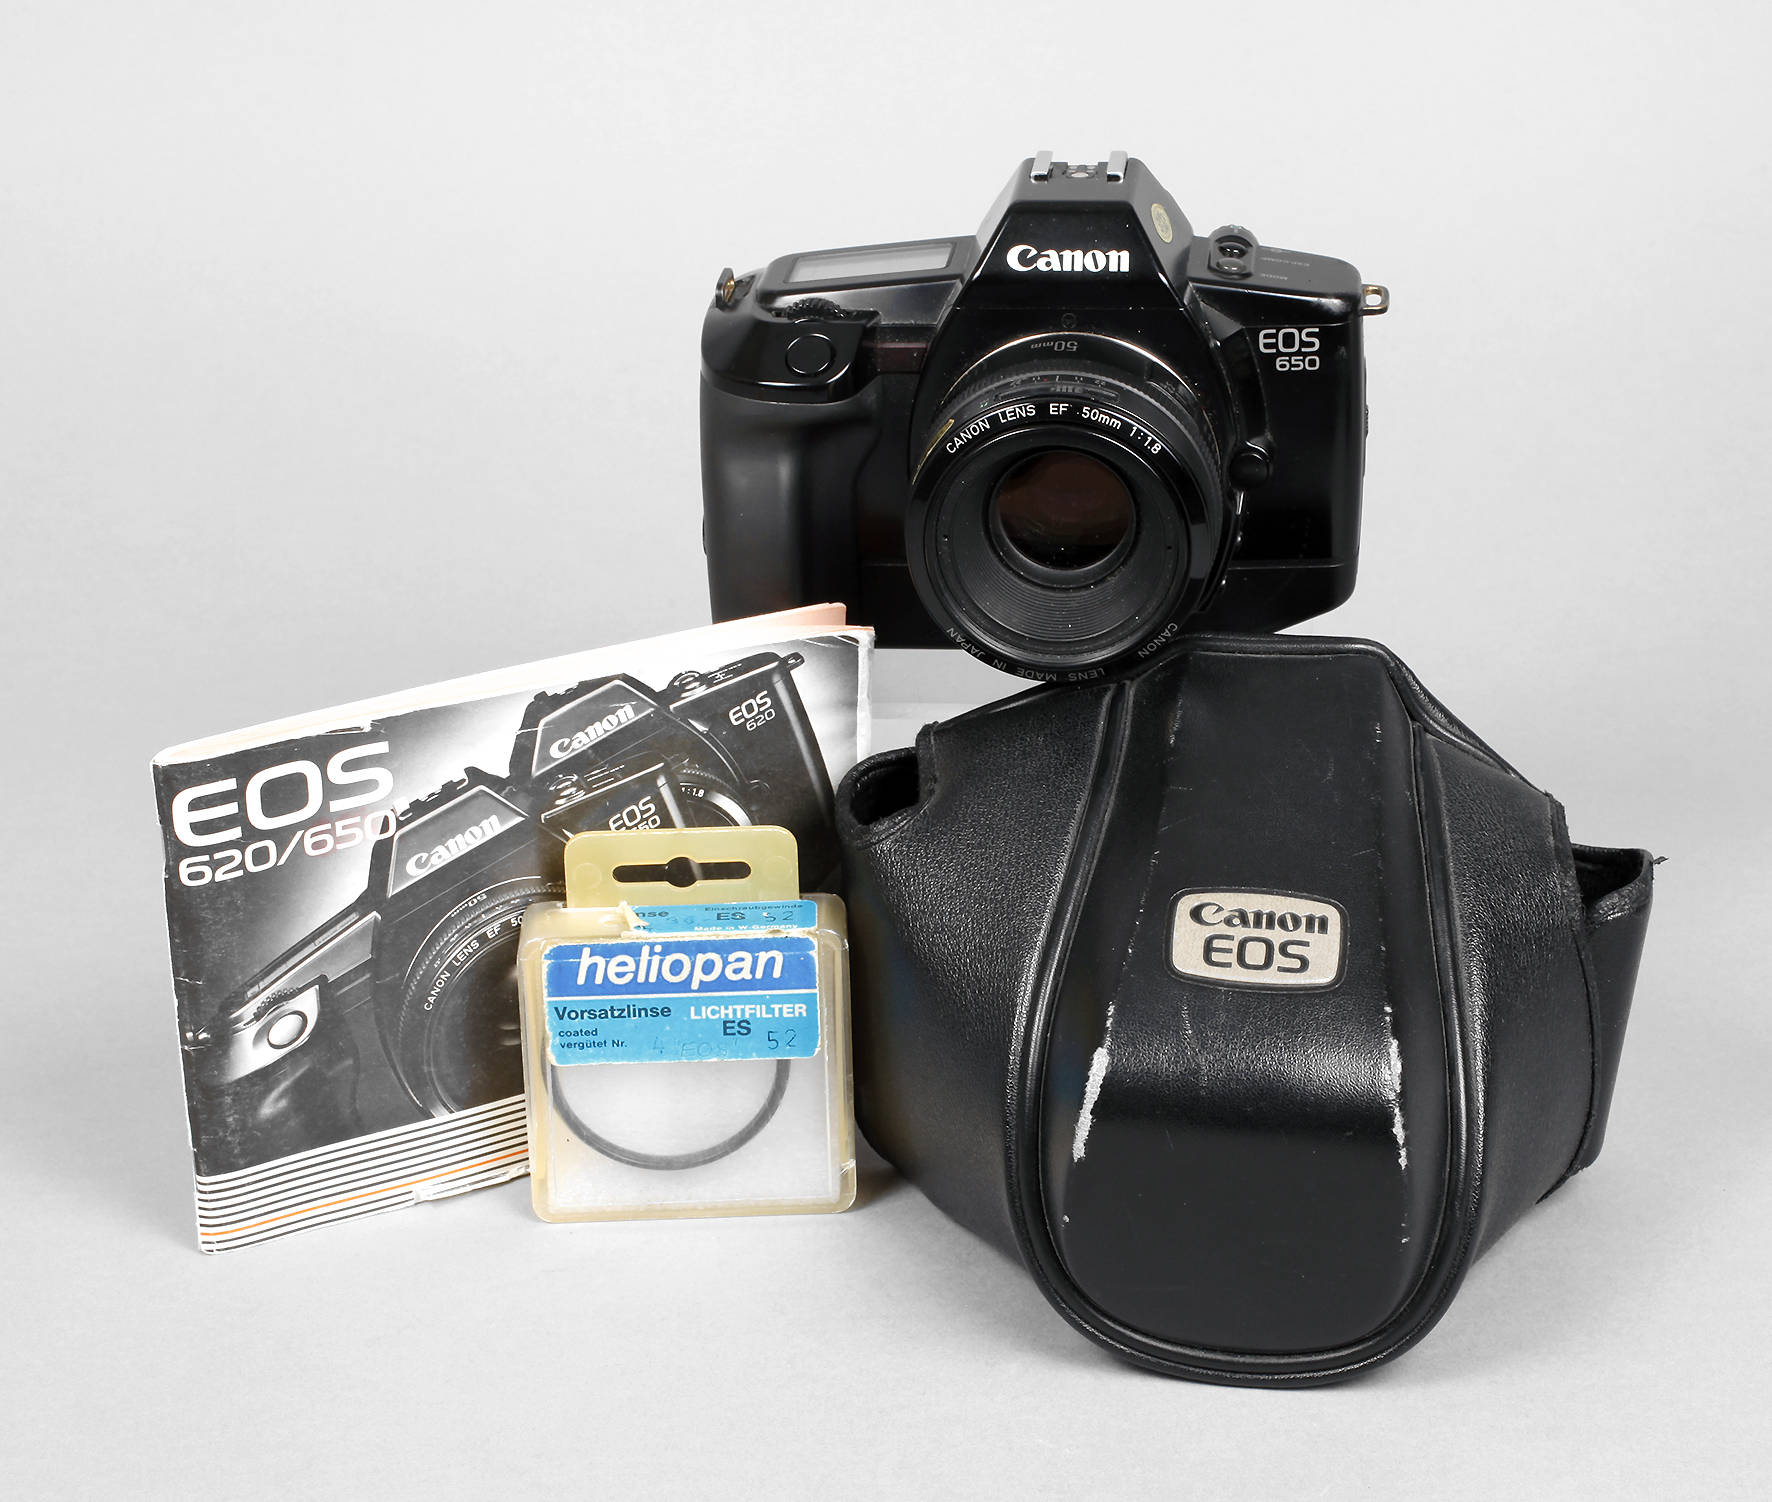 Spiegelreflexkamera Canon EOS 650